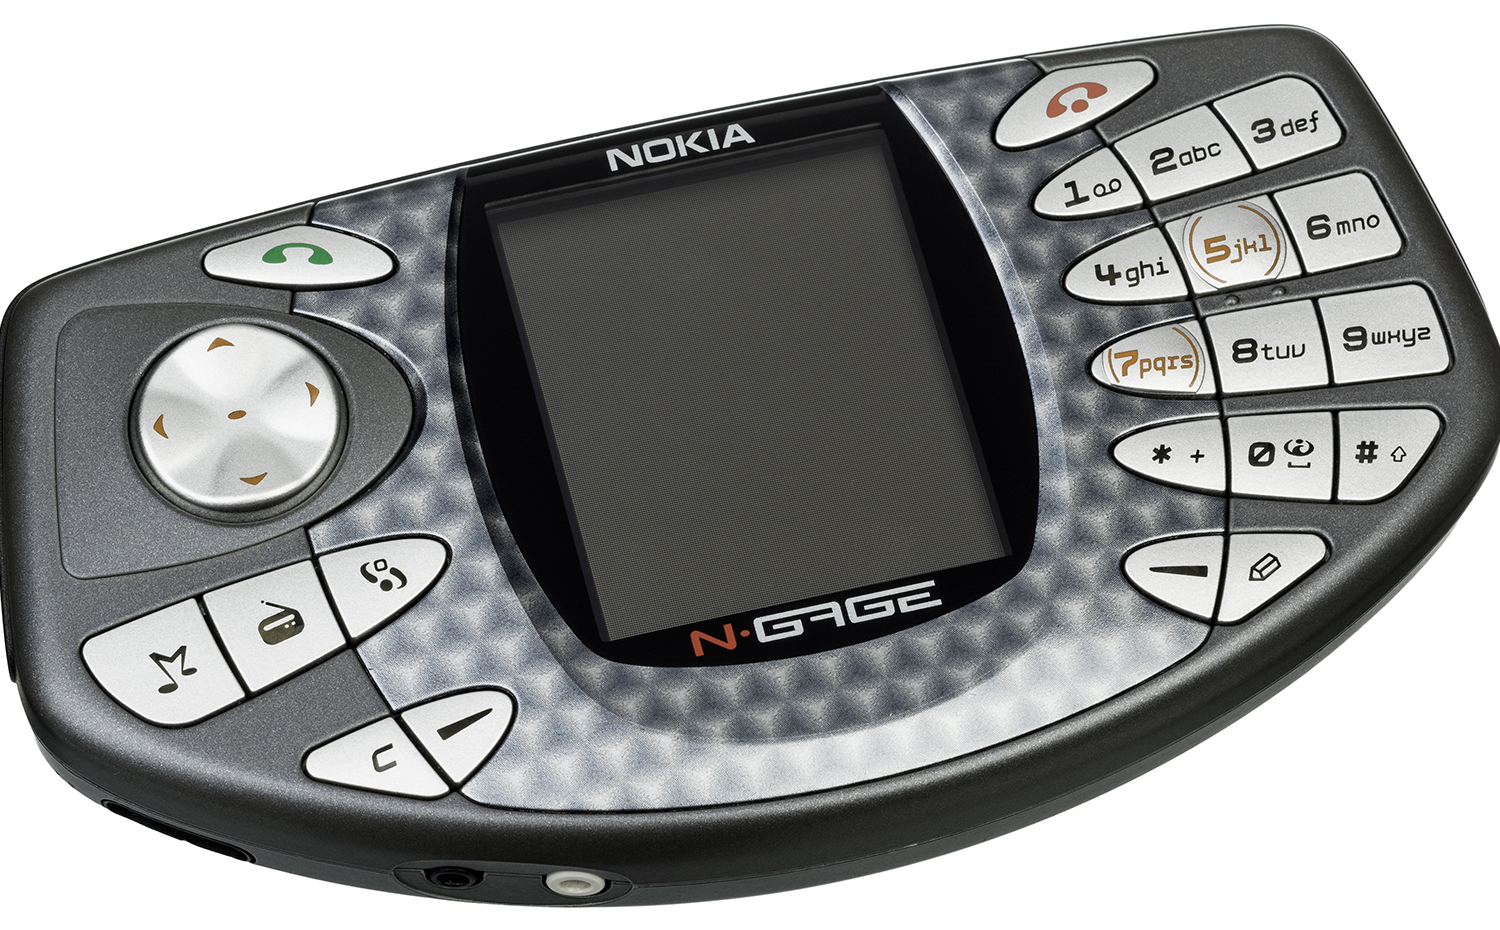 Nokia-NGage-LR. Nokia N-Gage, un híbrido entre teléfono móvil y consola de juegos portátil lanzado en 2003, podría haber llegado lejos de no haber tenido un diseño tan rematadamente malo. Por ejemplo, el teclado era de lo más incómodo, y el micrófono y el altavoz estaban en un lado para que la grasa del rostro no manchara la pantalla, por lo que había que hablar por el lateral